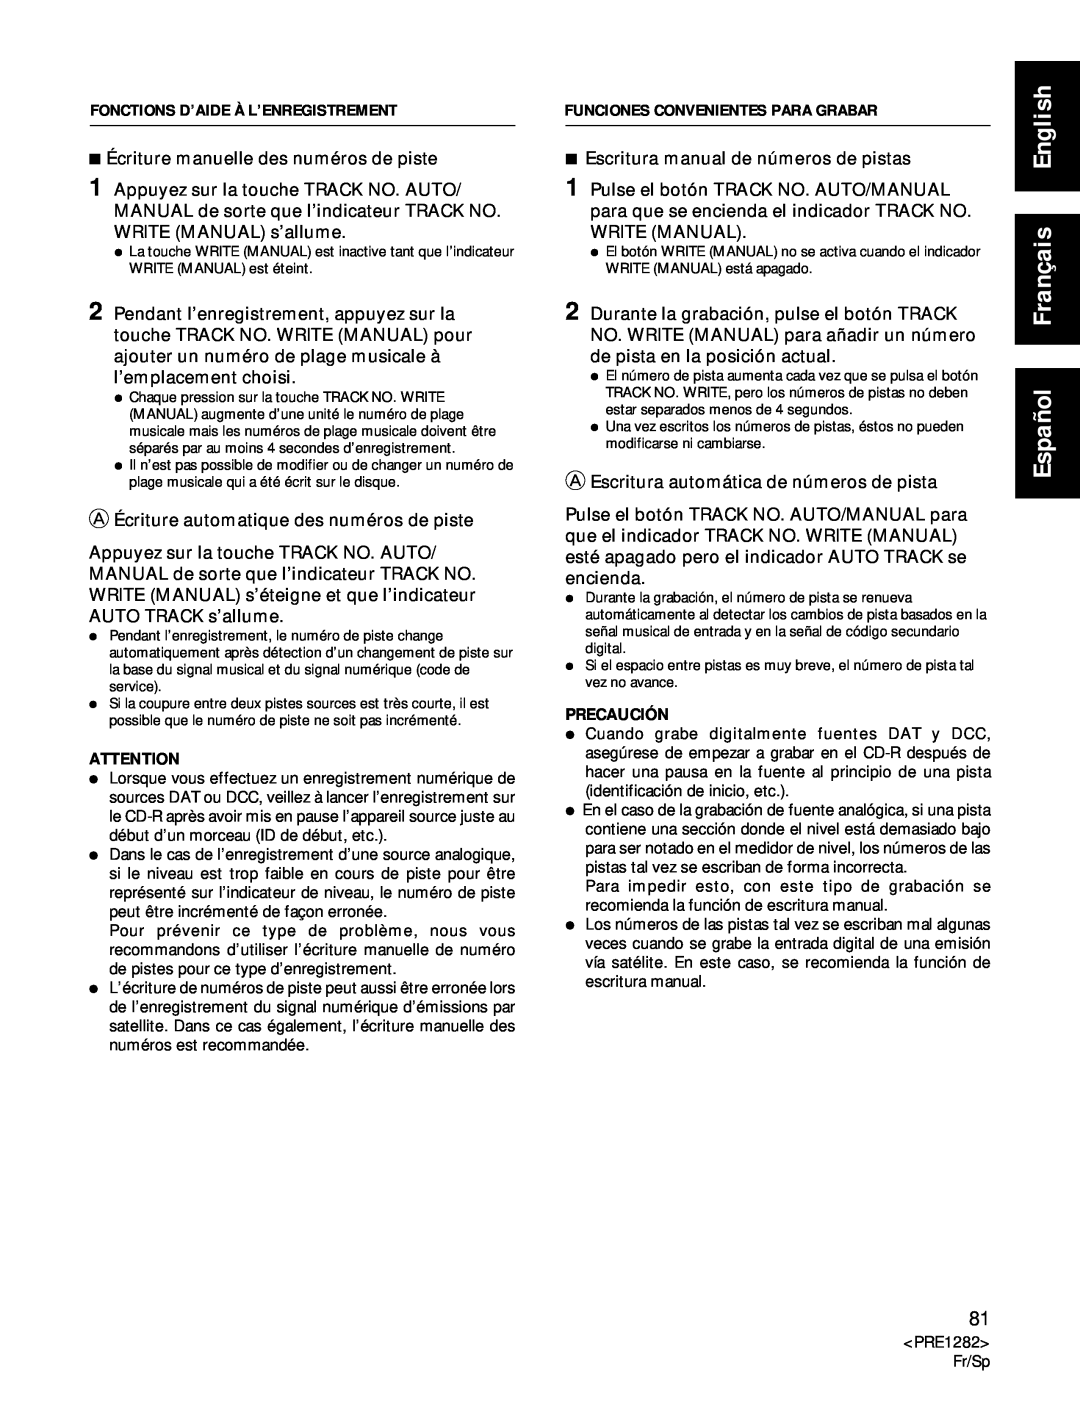 Americana Appliances CDR-850 manual Español Français English, 7Écriture manuelle des numéros de piste 